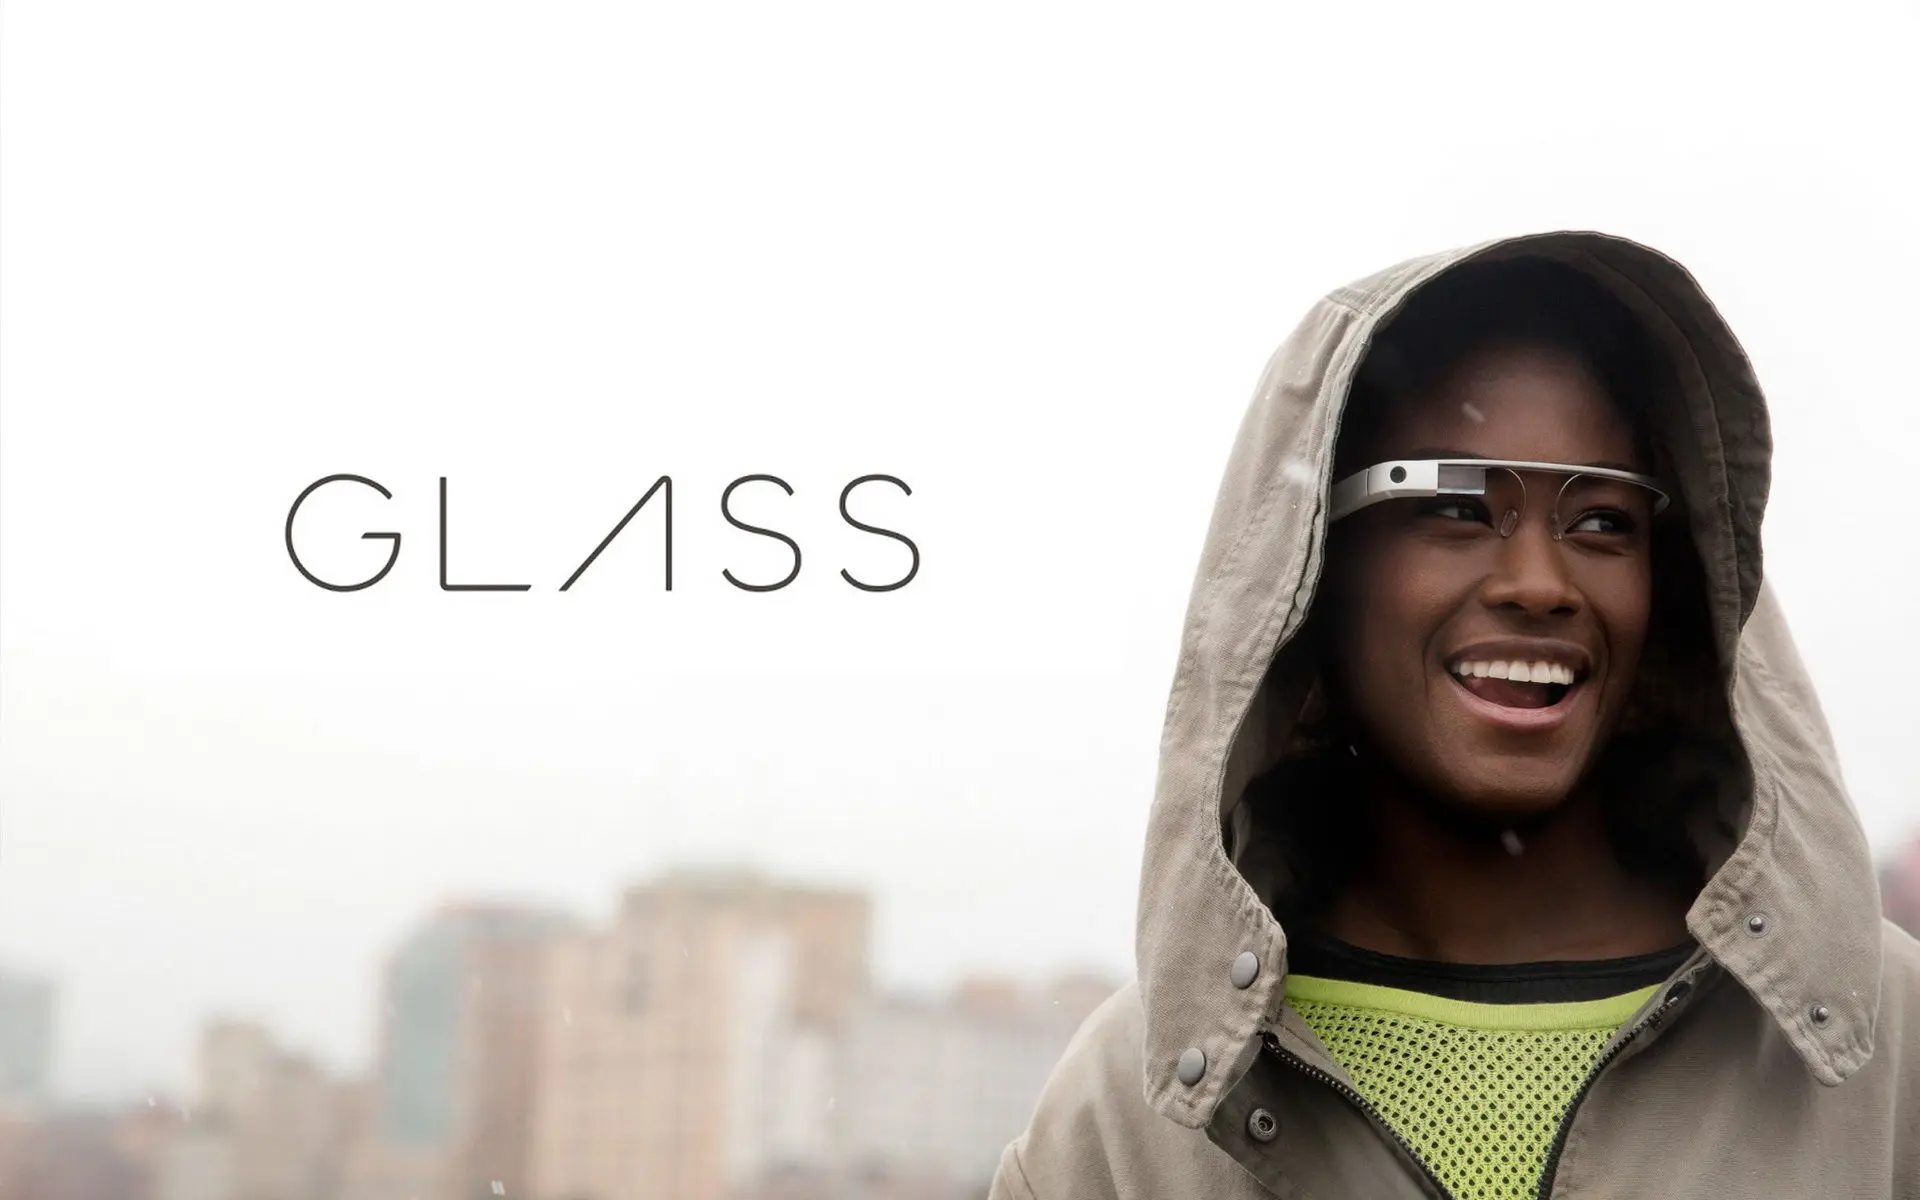 Google Glass : alors ça donne quoi ?